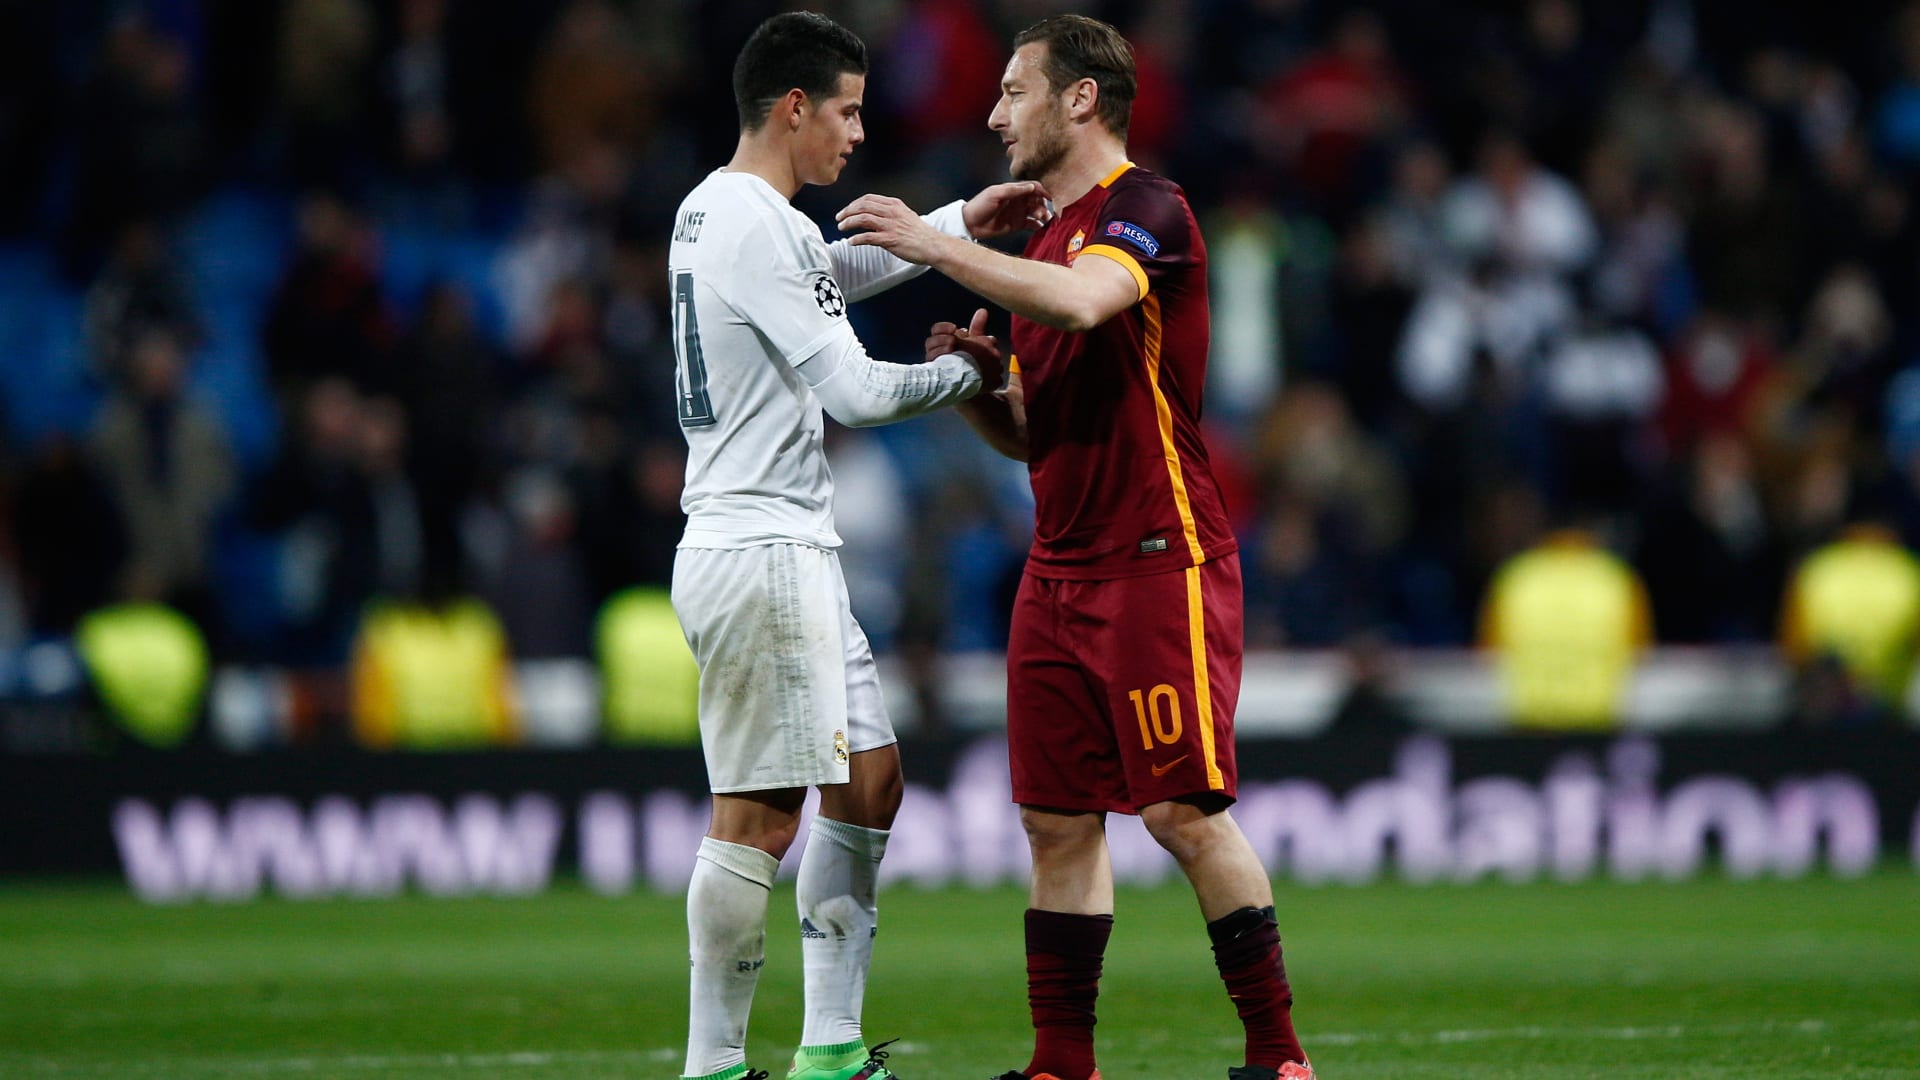 مصافحة بين خاميس رودريغز من نادي ريال مدريد وفرانسيسكو توتي من نادي روما بعد المباراة.